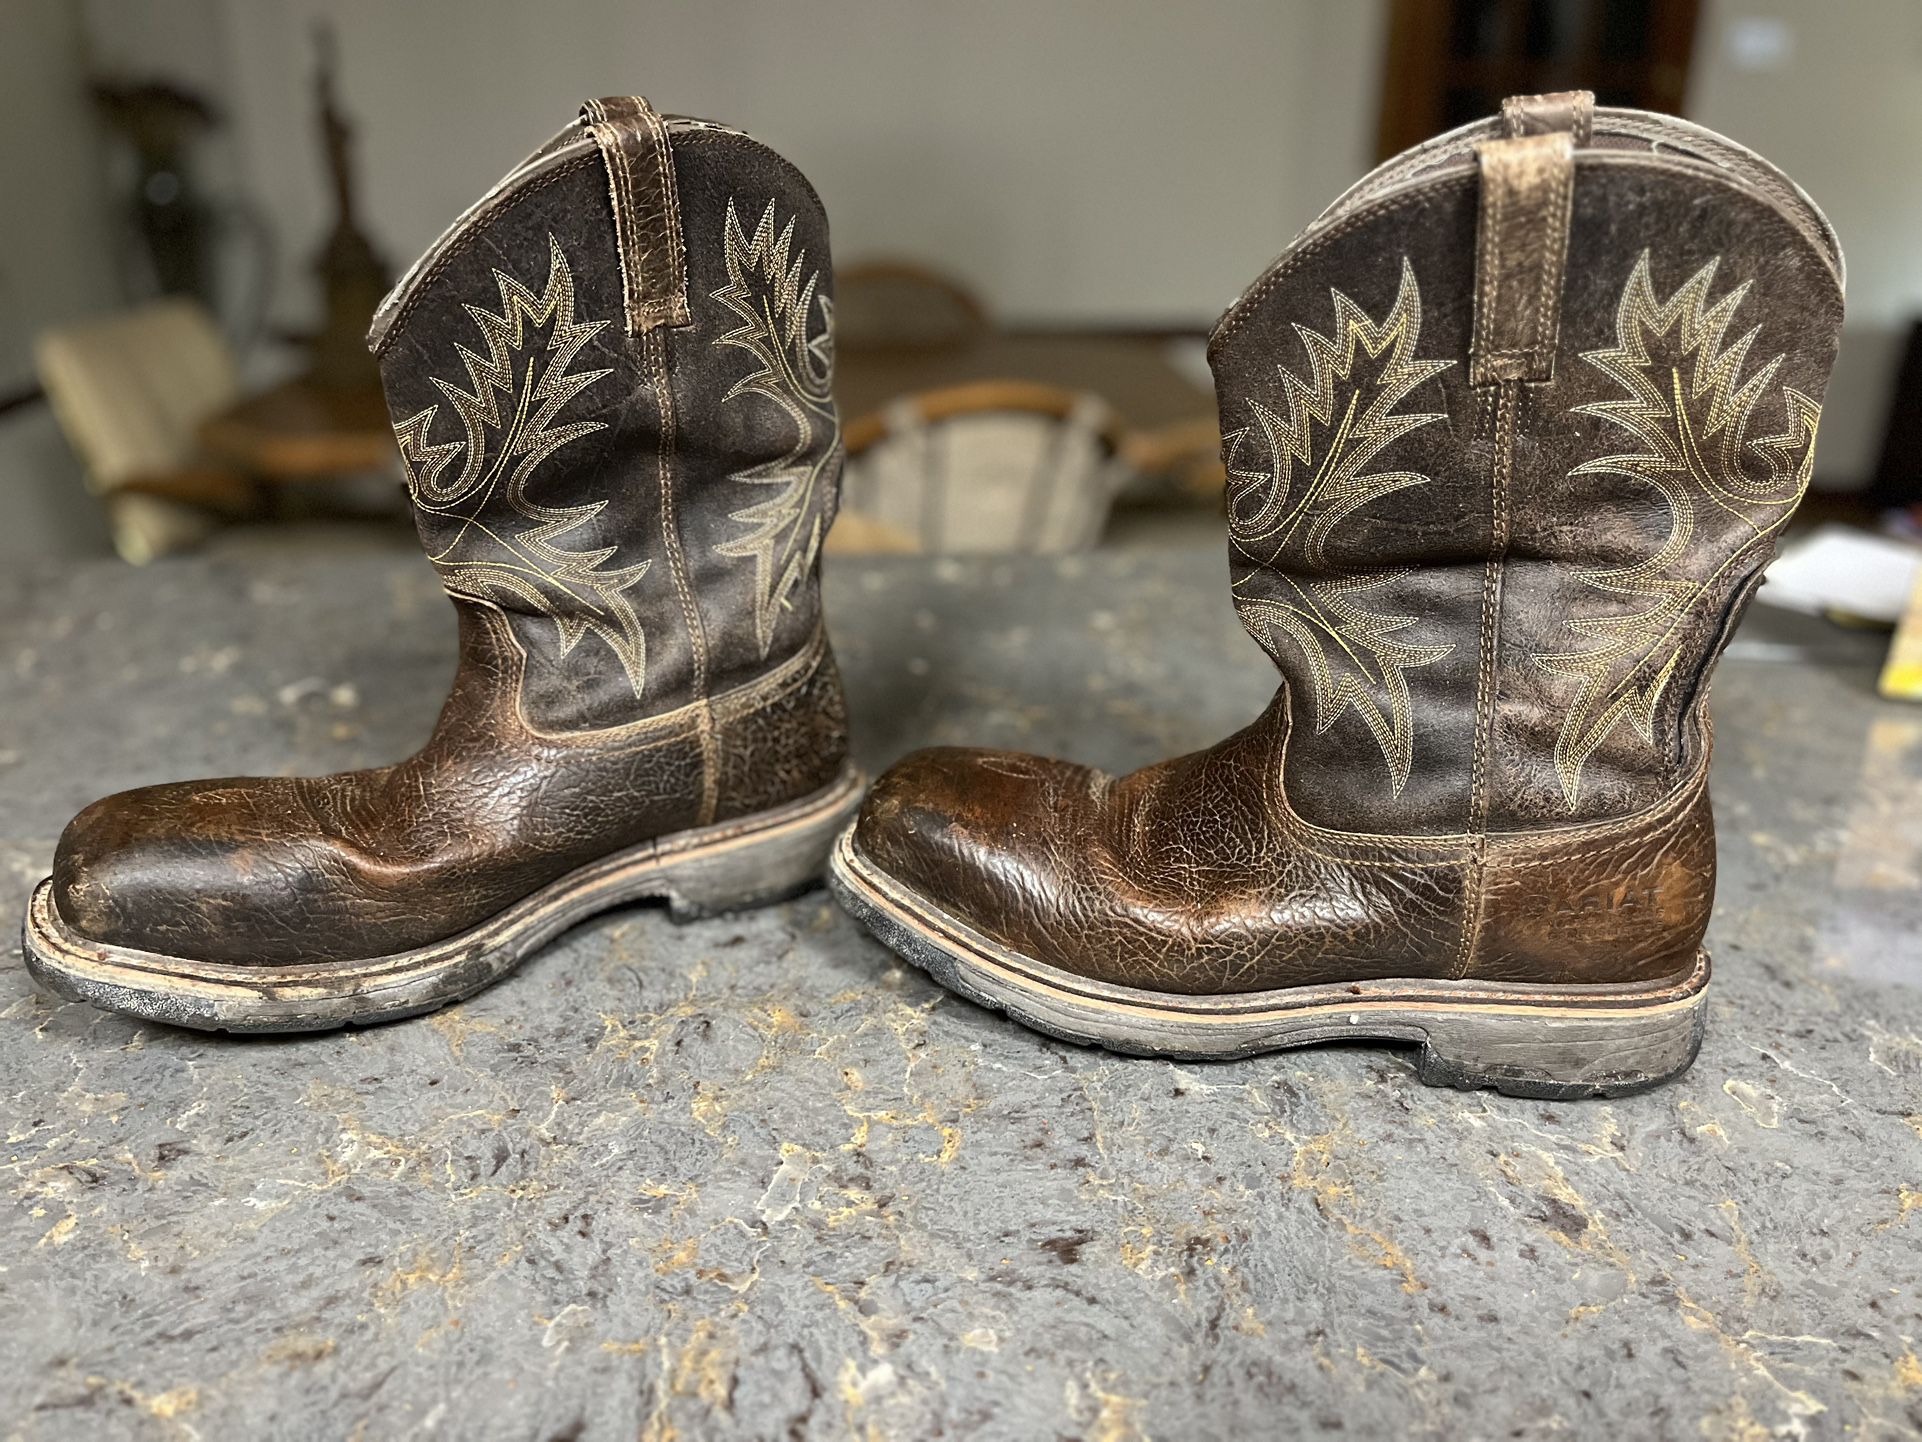 Ariat WorkHog Waterproof Composite Toe Work Boots (10017420), Size 13D